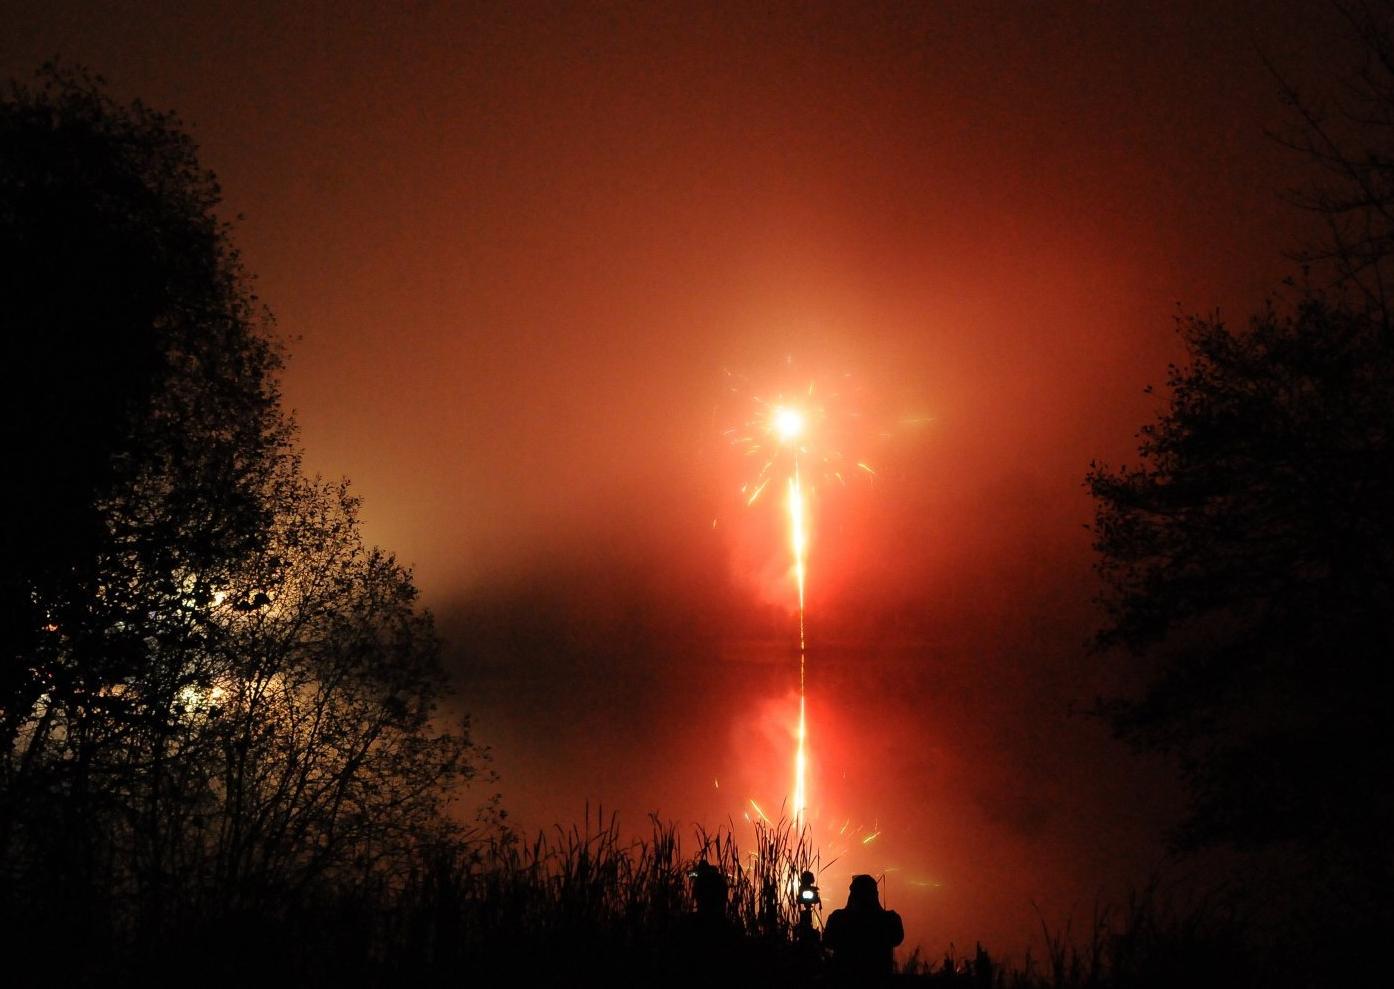 Fireworks on a misty loch.